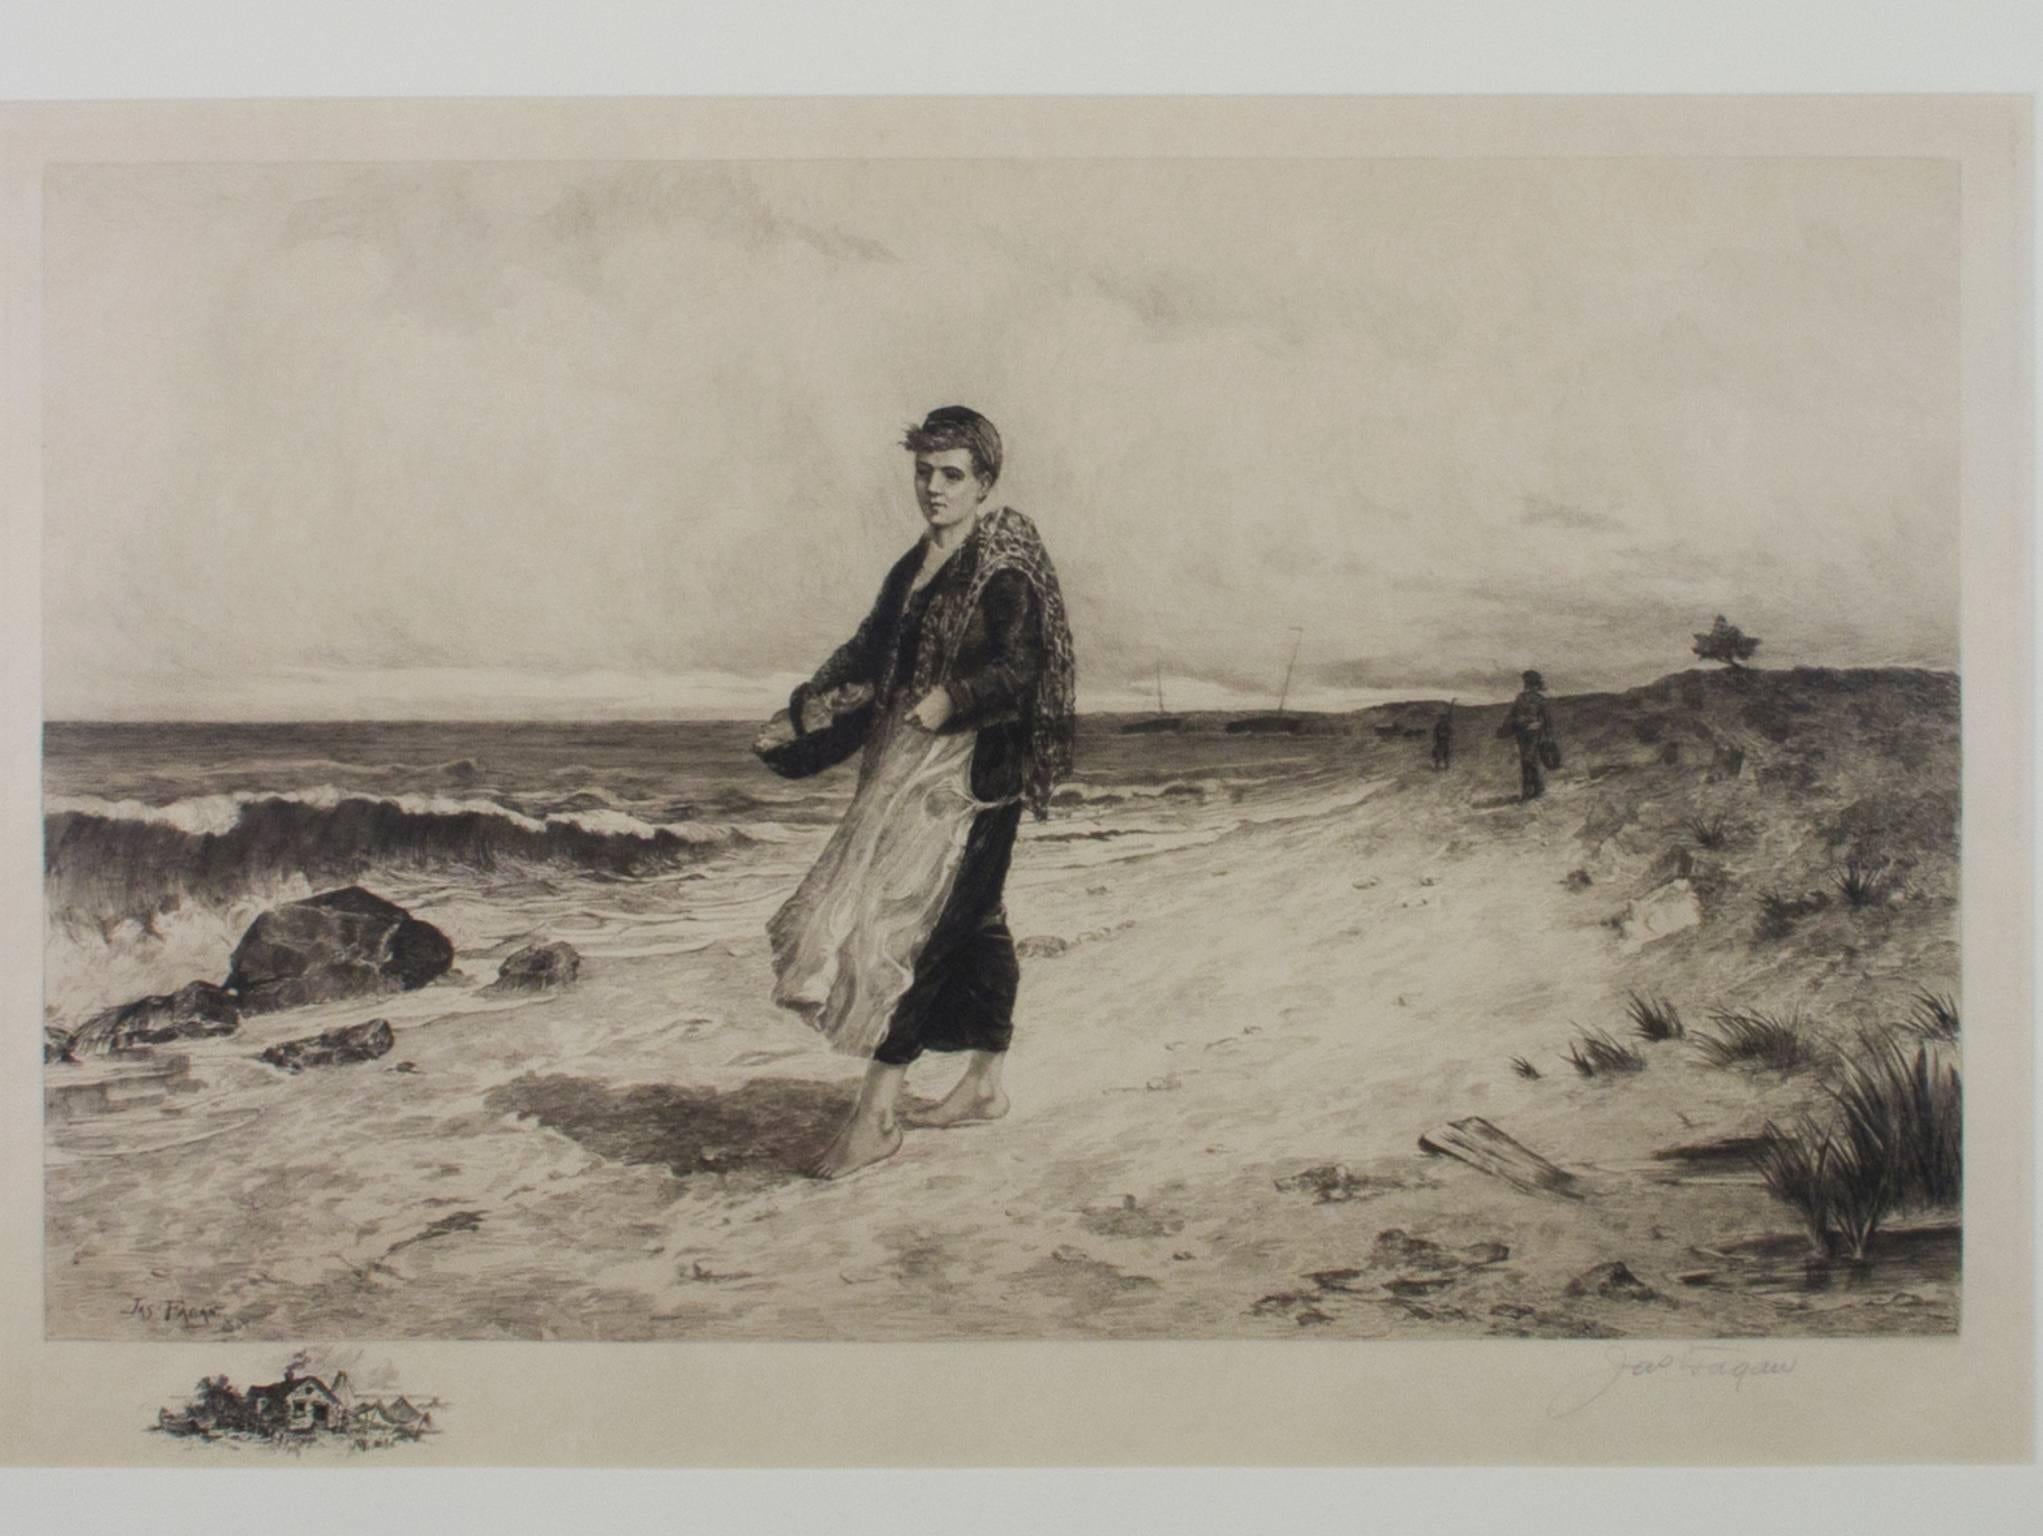 "The Fisherman's Catch" est une gravure signée (au crayon en bas à droite et à la planche en bas à gauche) par James Fagan. Il représente un pêcheur marchant sur une plage en noir et blanc. Il est signé JAS Fagan, qui était une façon courante